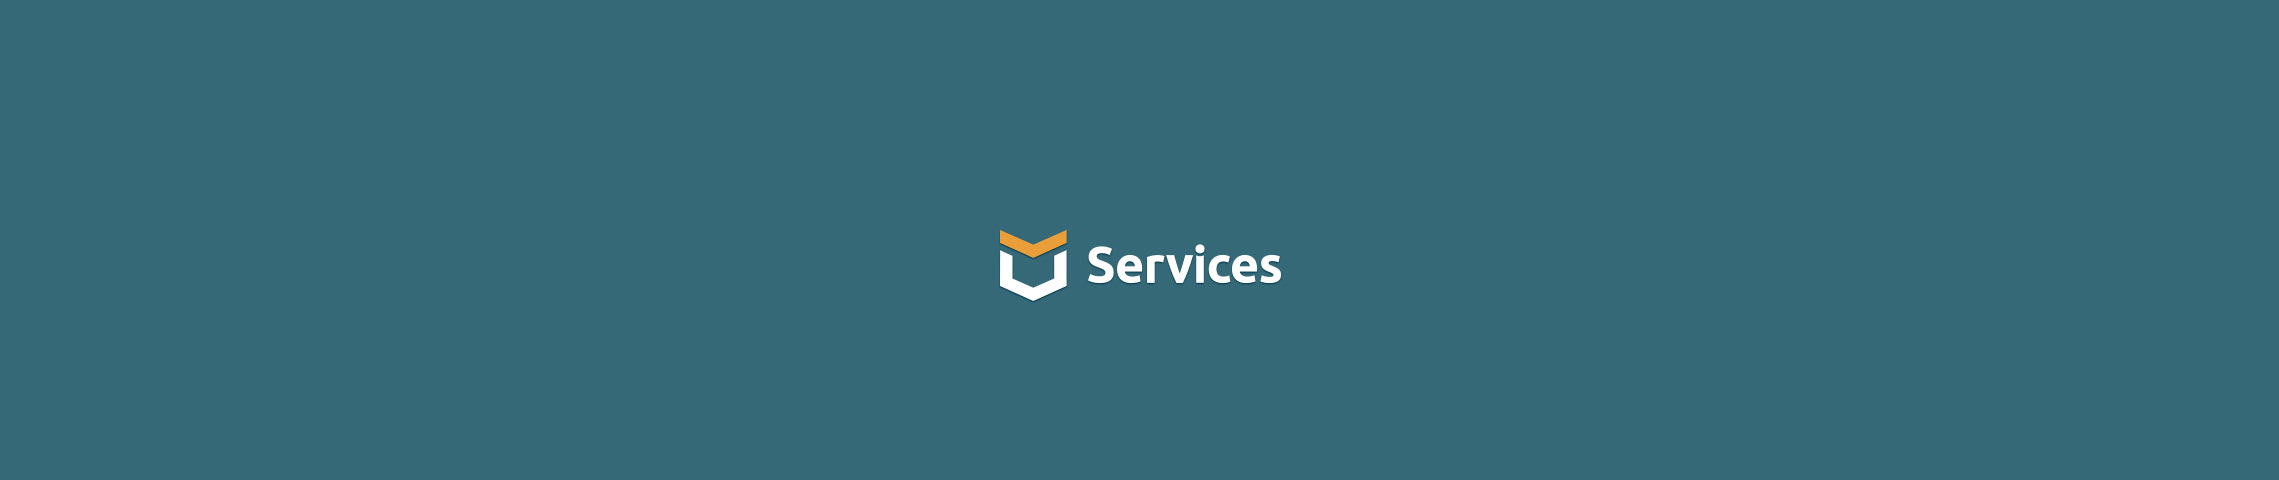 MU Services's profile banner